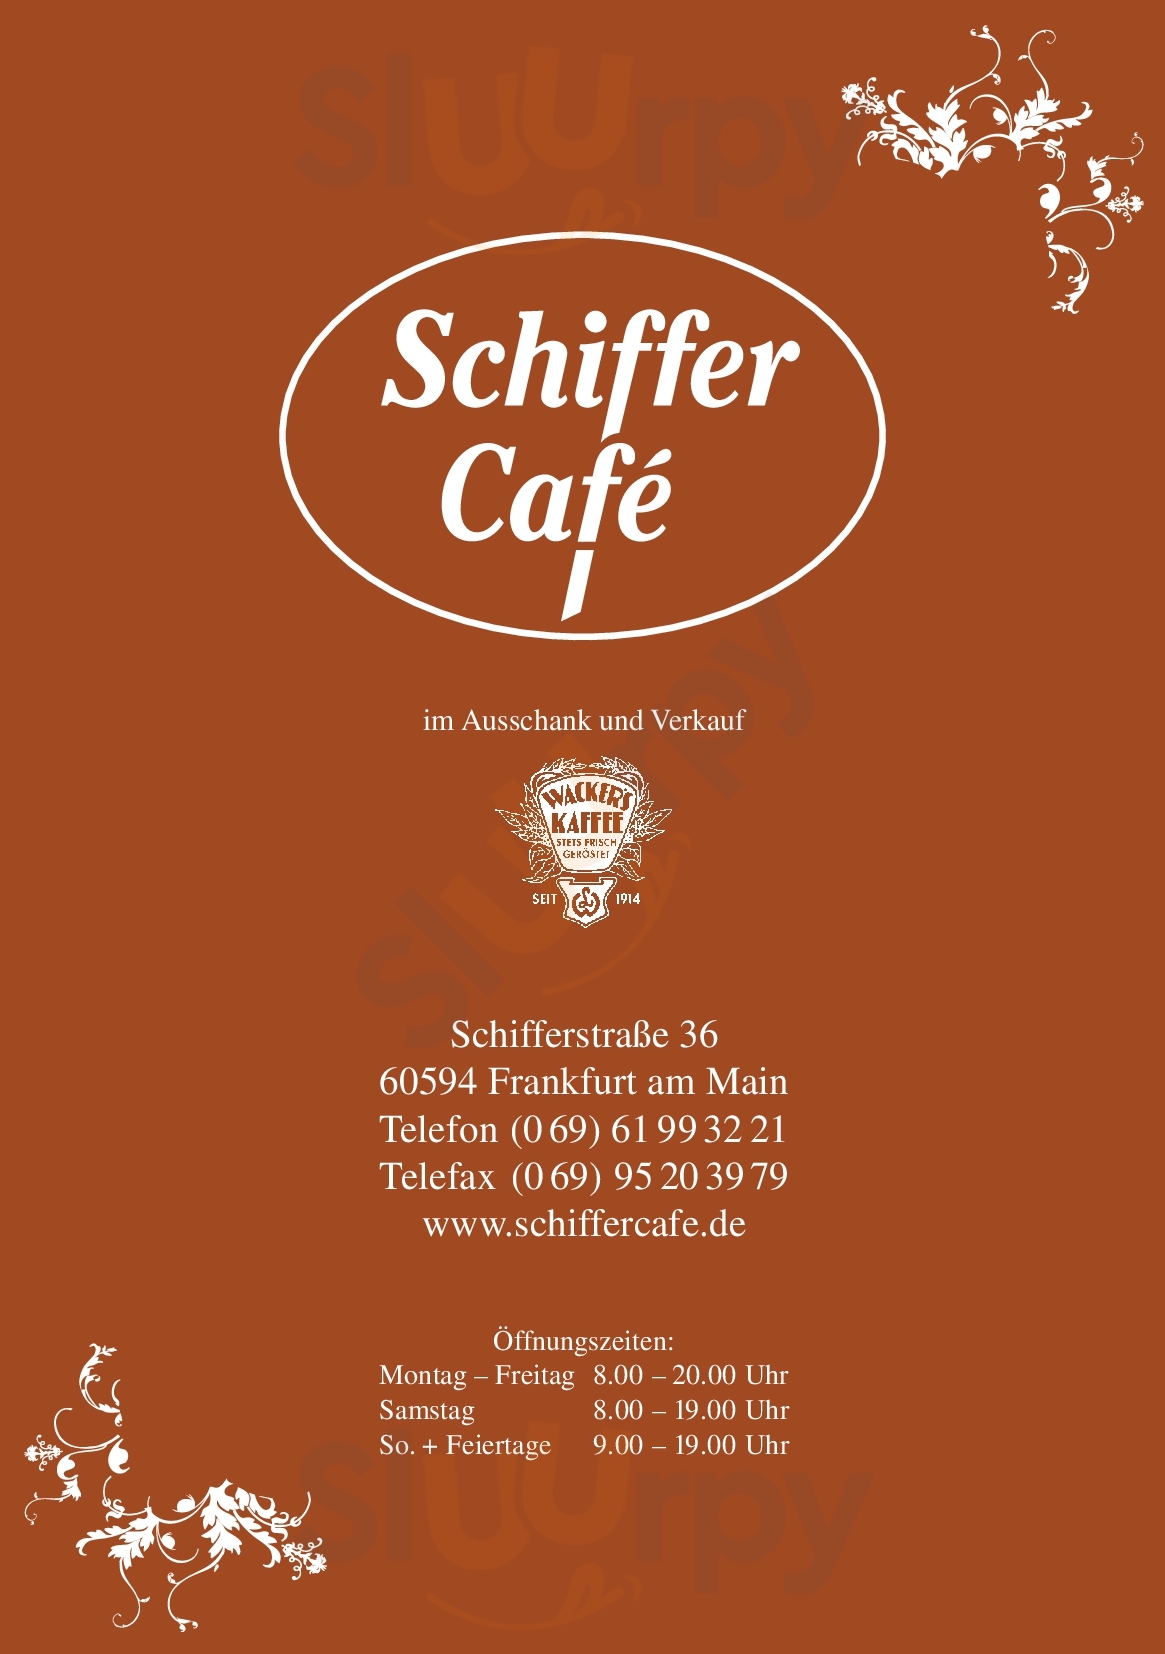 Das Schiffer Cafe Frankfurt am Main Menu - 1